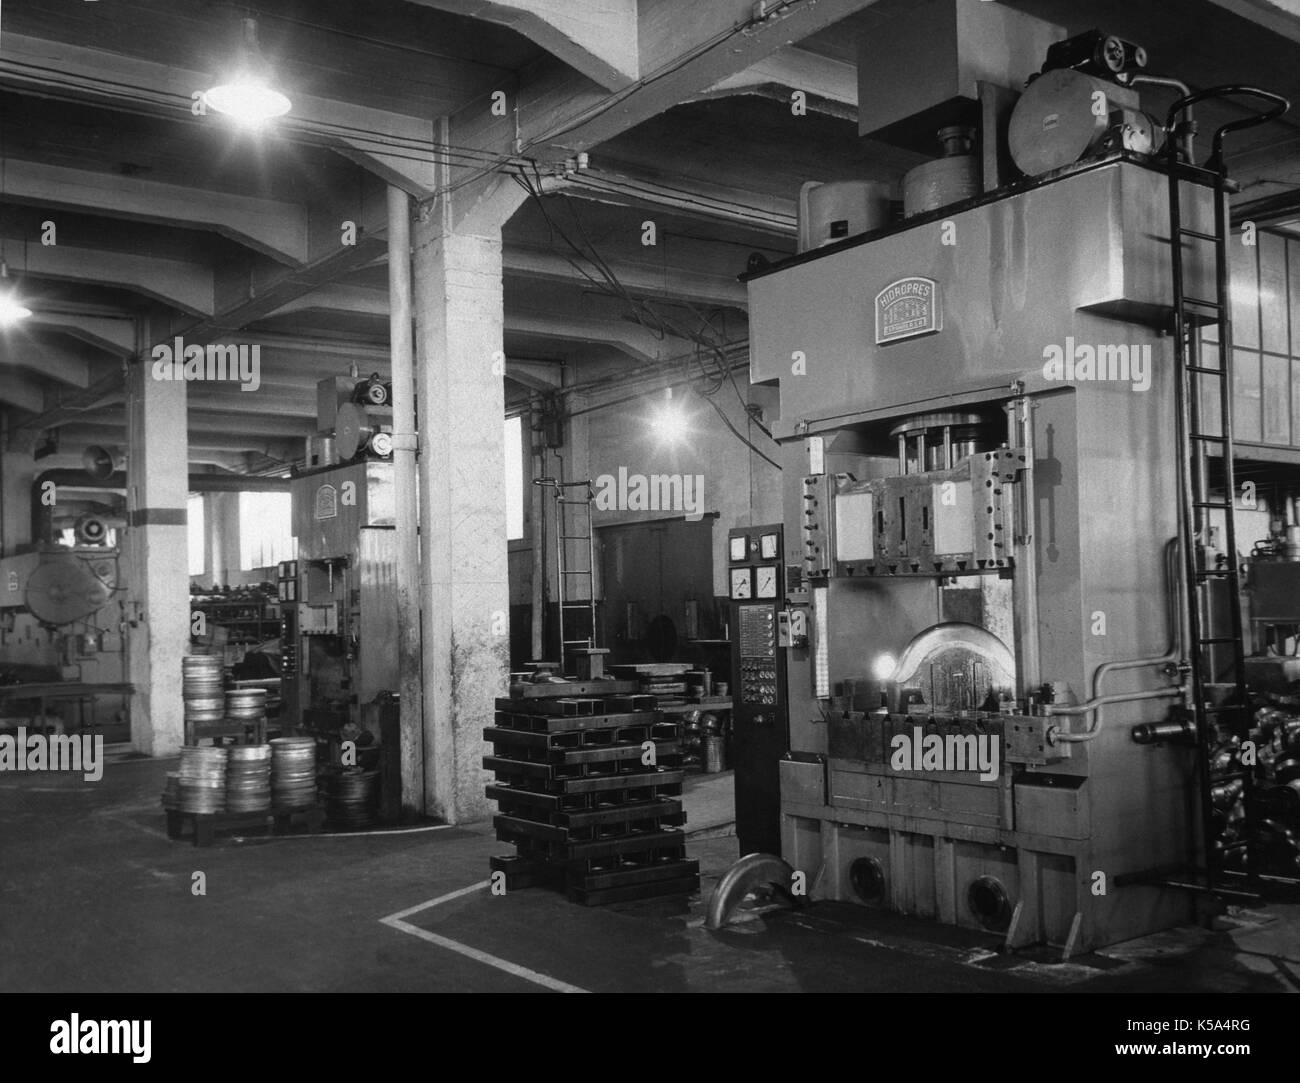 L'industria spagnola, 1969. Presse idrauliche in una fabbrica dedicata al metallo timbratura di grande stazza. Sant Andreu de la Barca, provincia di Barcelona, Catalogna, Spagna. Foto Stock